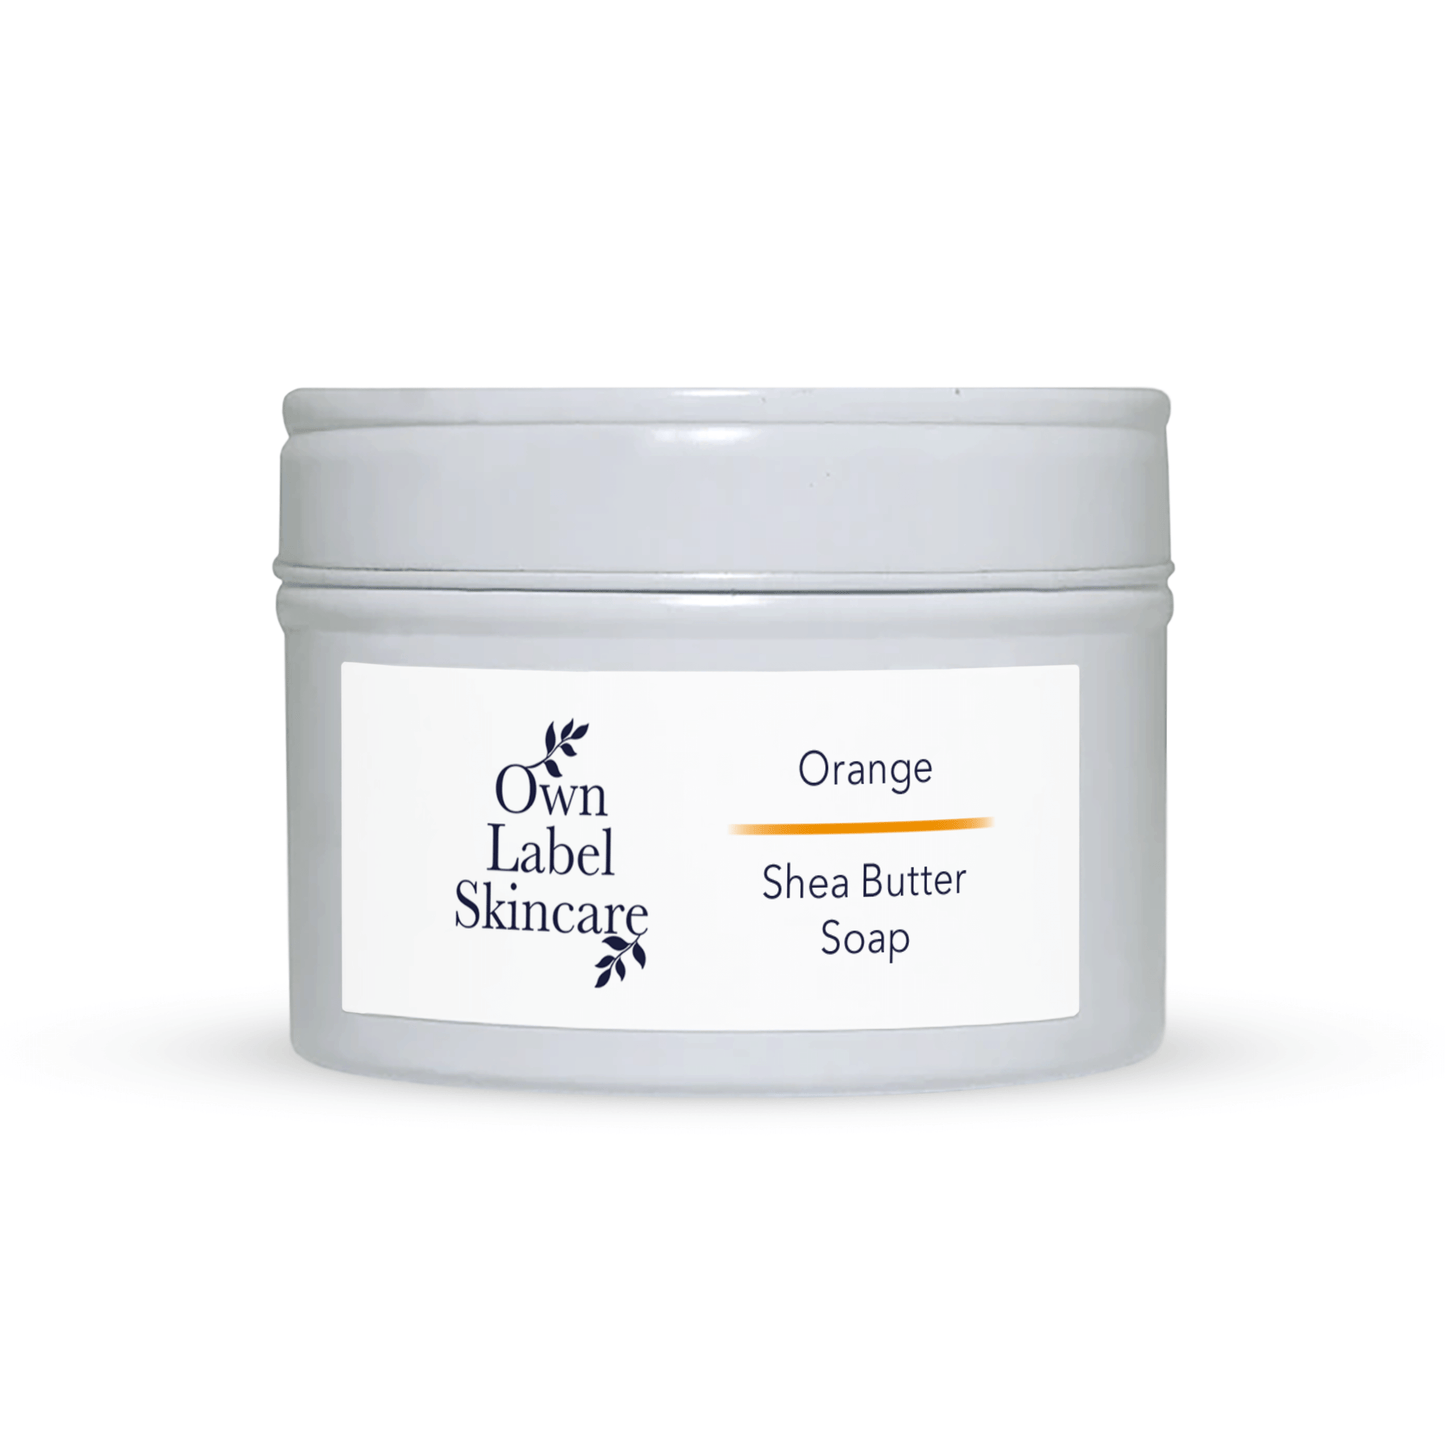 Orange & Shea Butter Soap | White Label Skincare